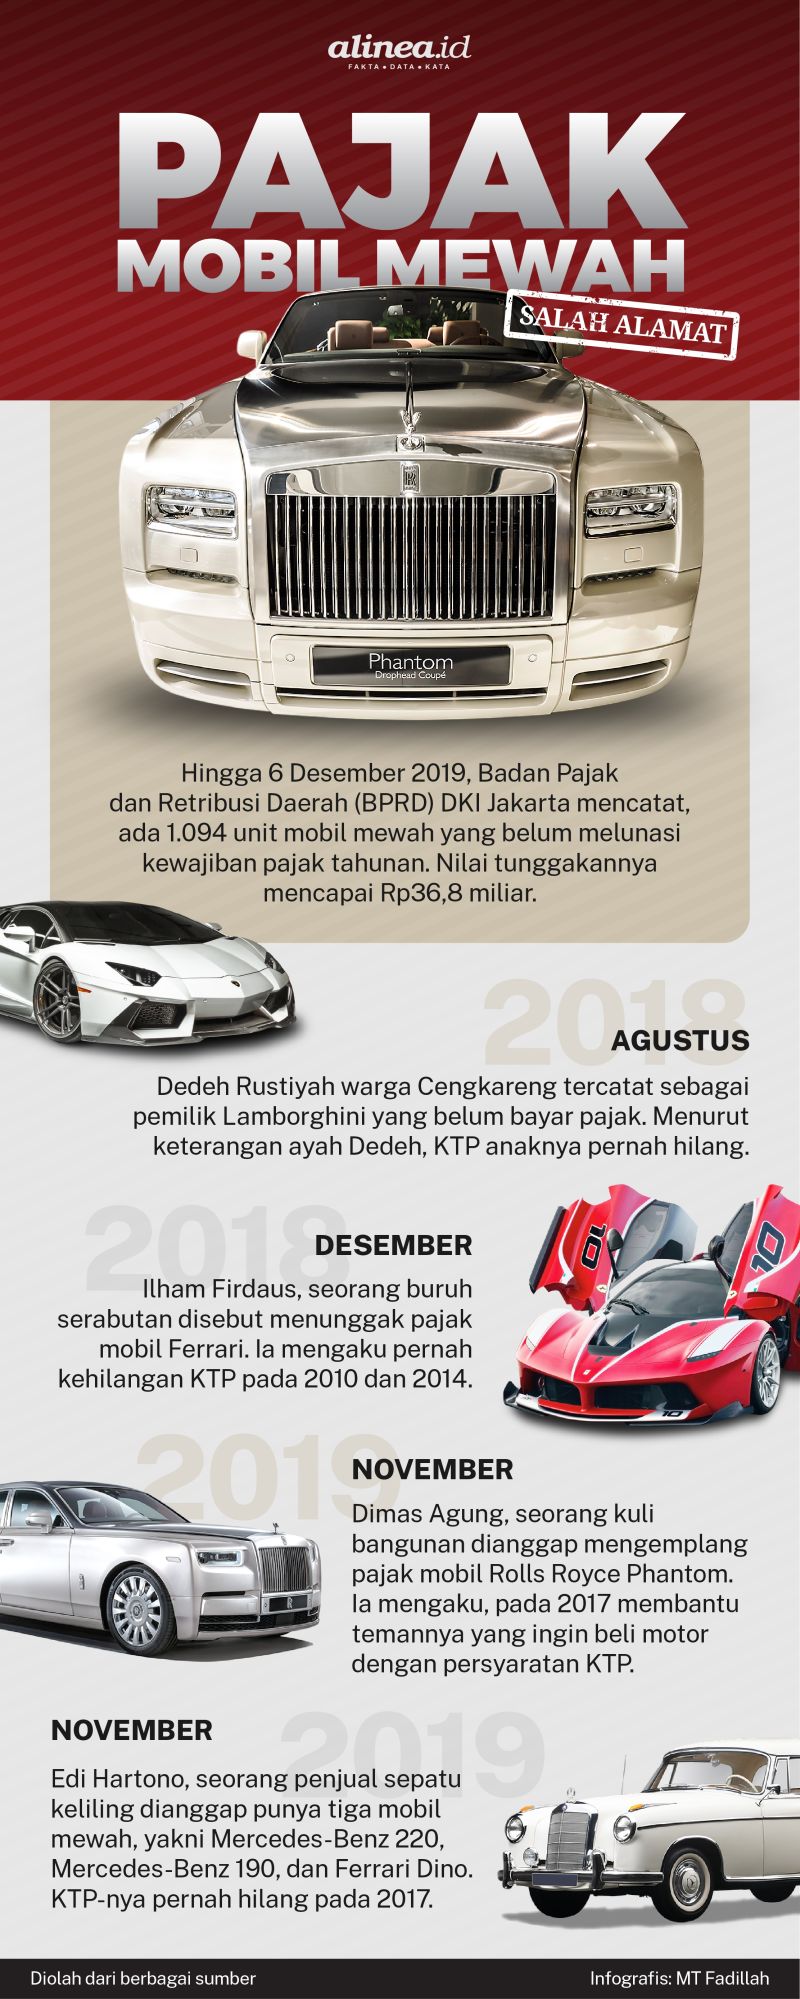 Infografik pajak mobil mewah. Alinea.id/MT Fadillah